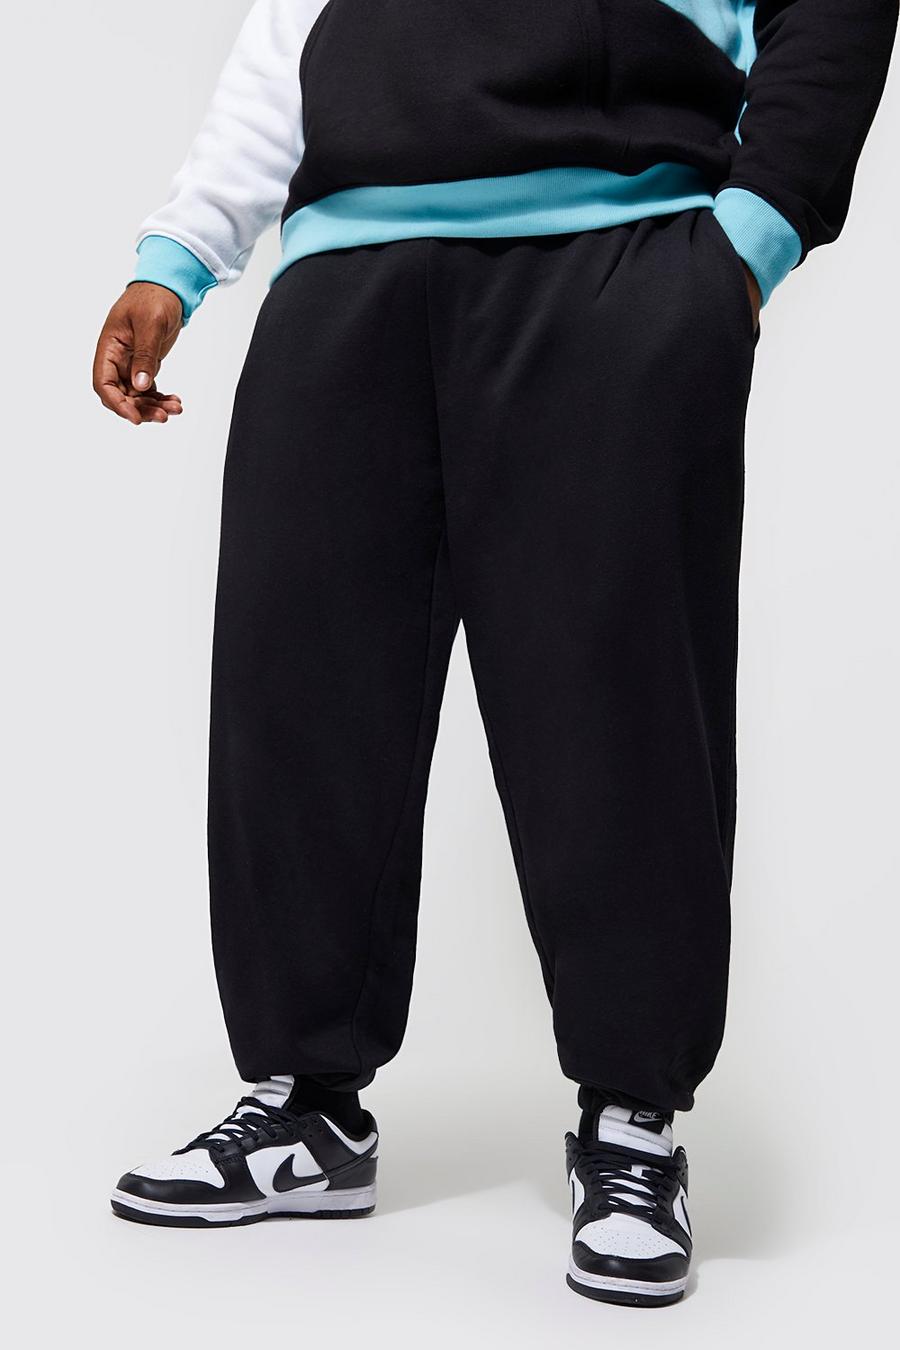 Pantalón deportivo Plus básico holgado con algodón ecológico, Black nero